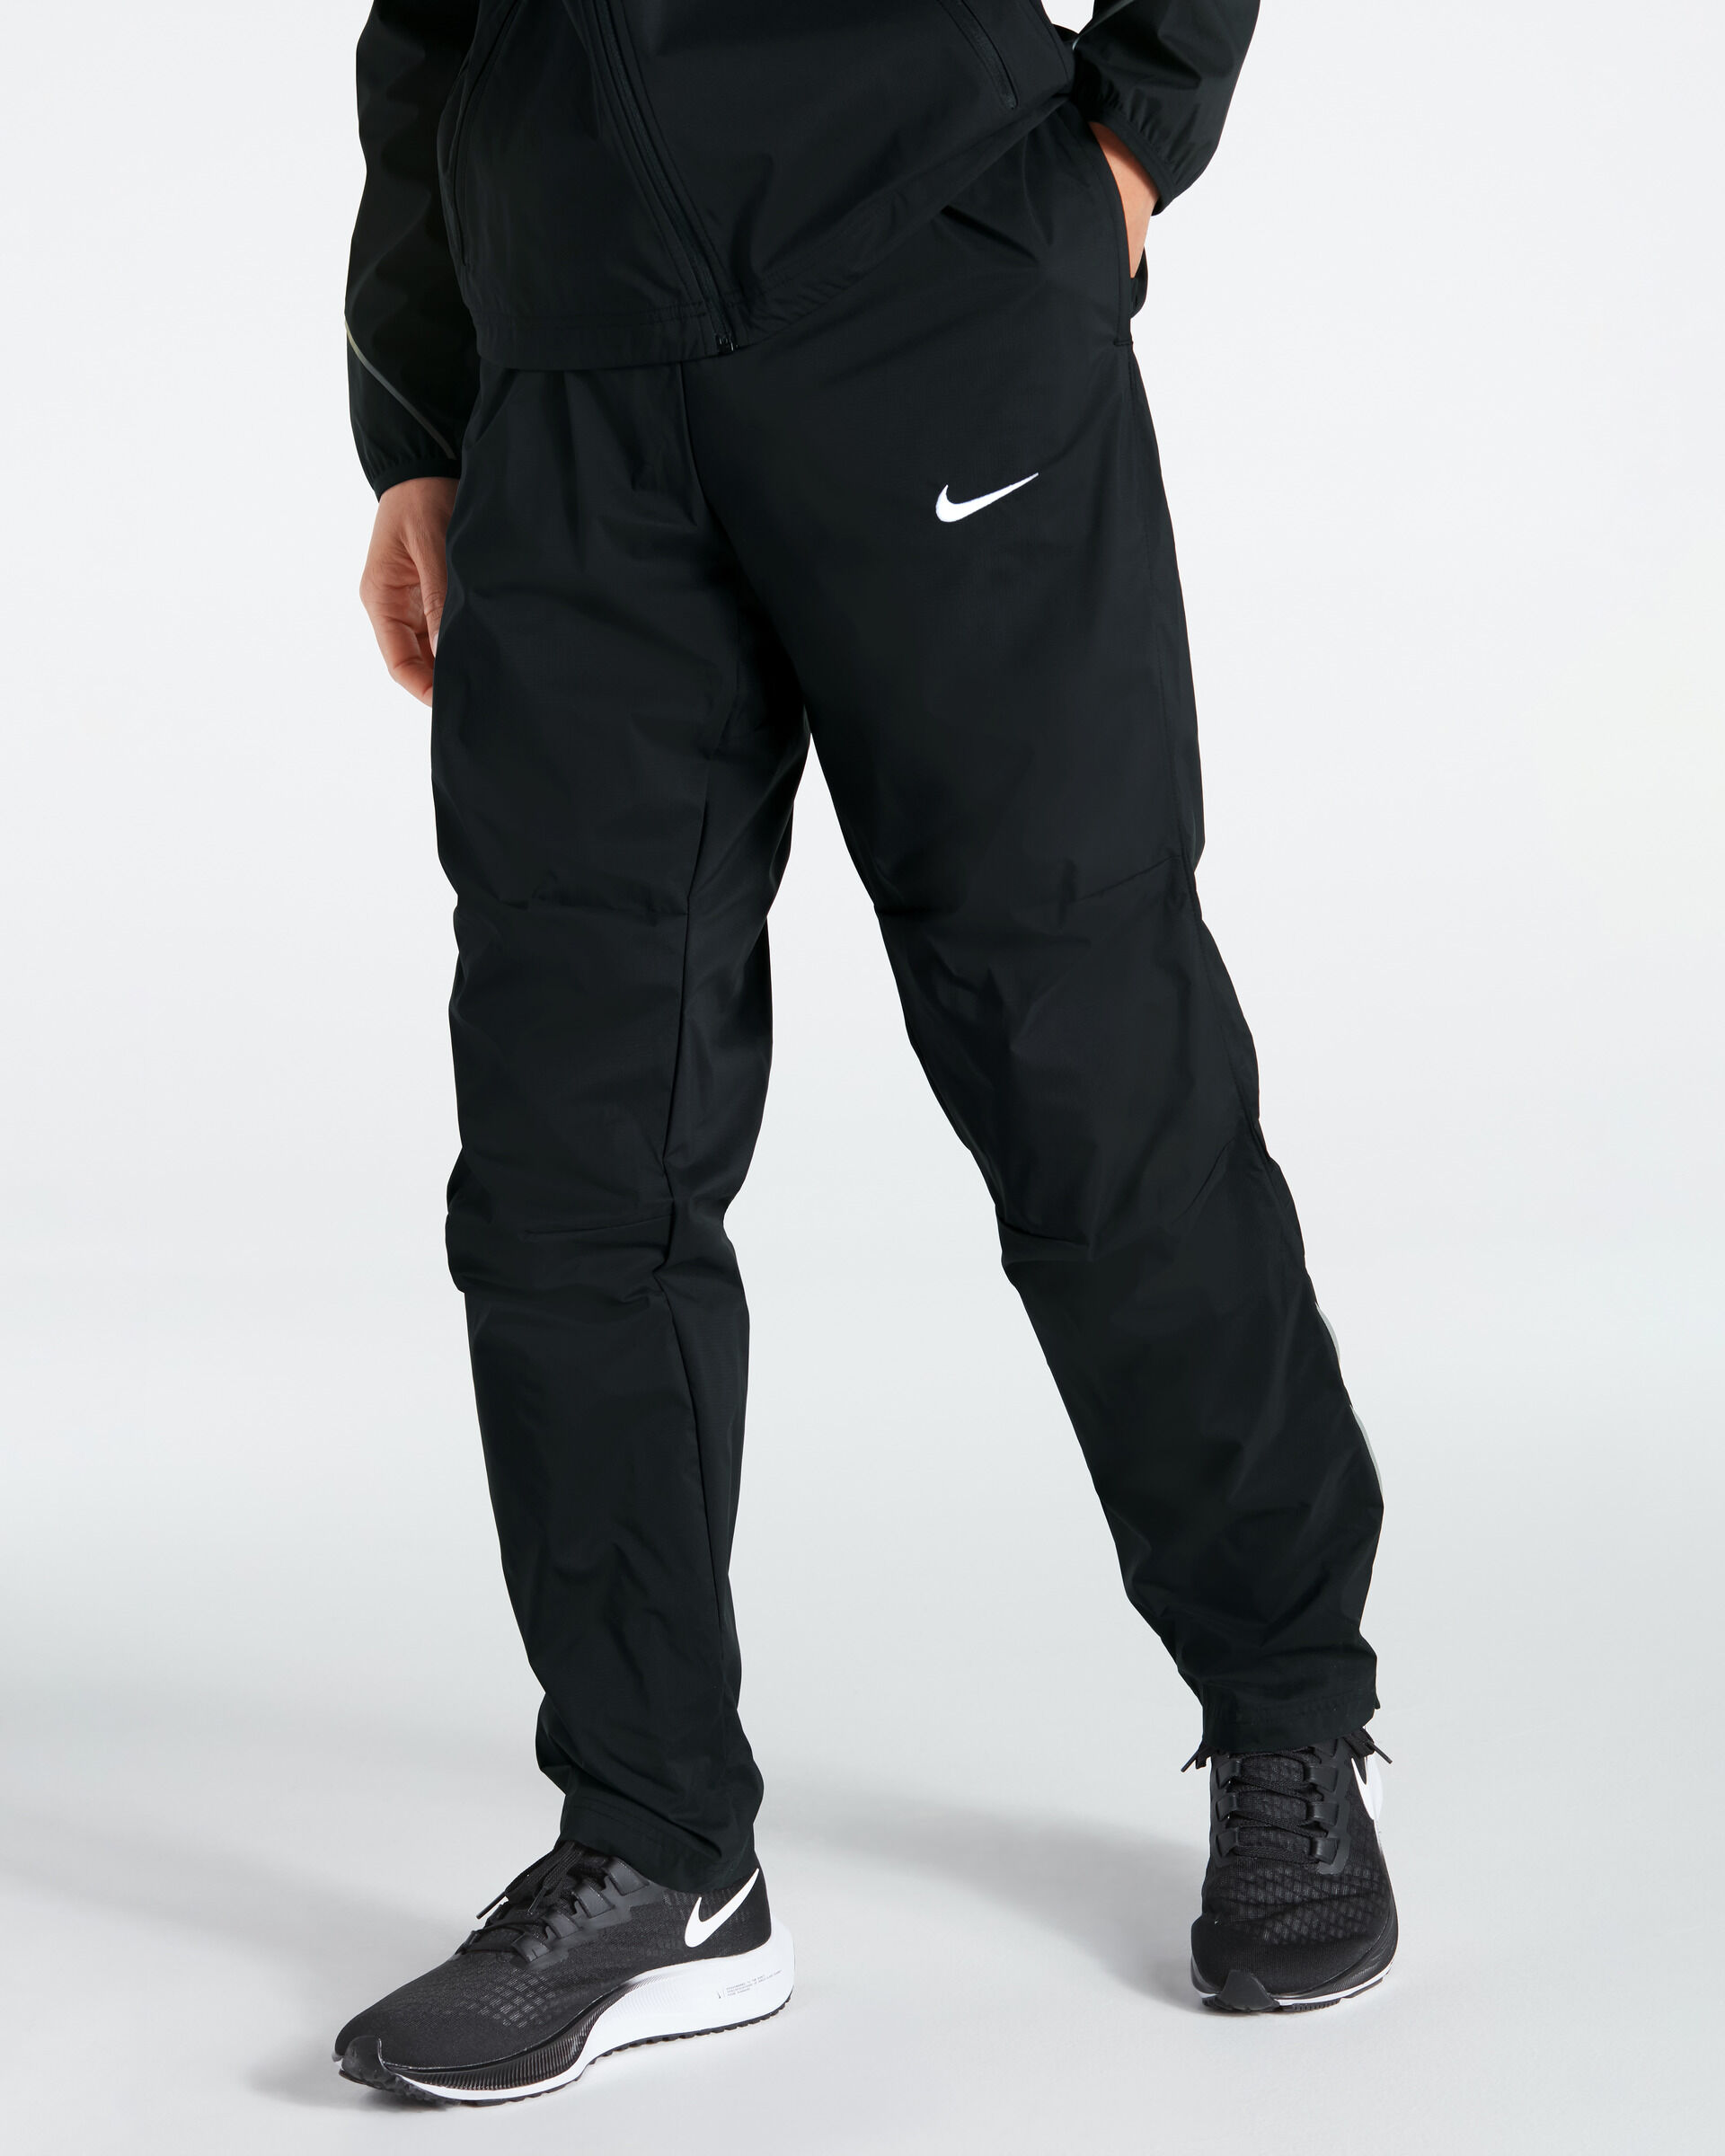 Nike Pantaloni da tuta Woven Nero per Uomo NT0321-010 L